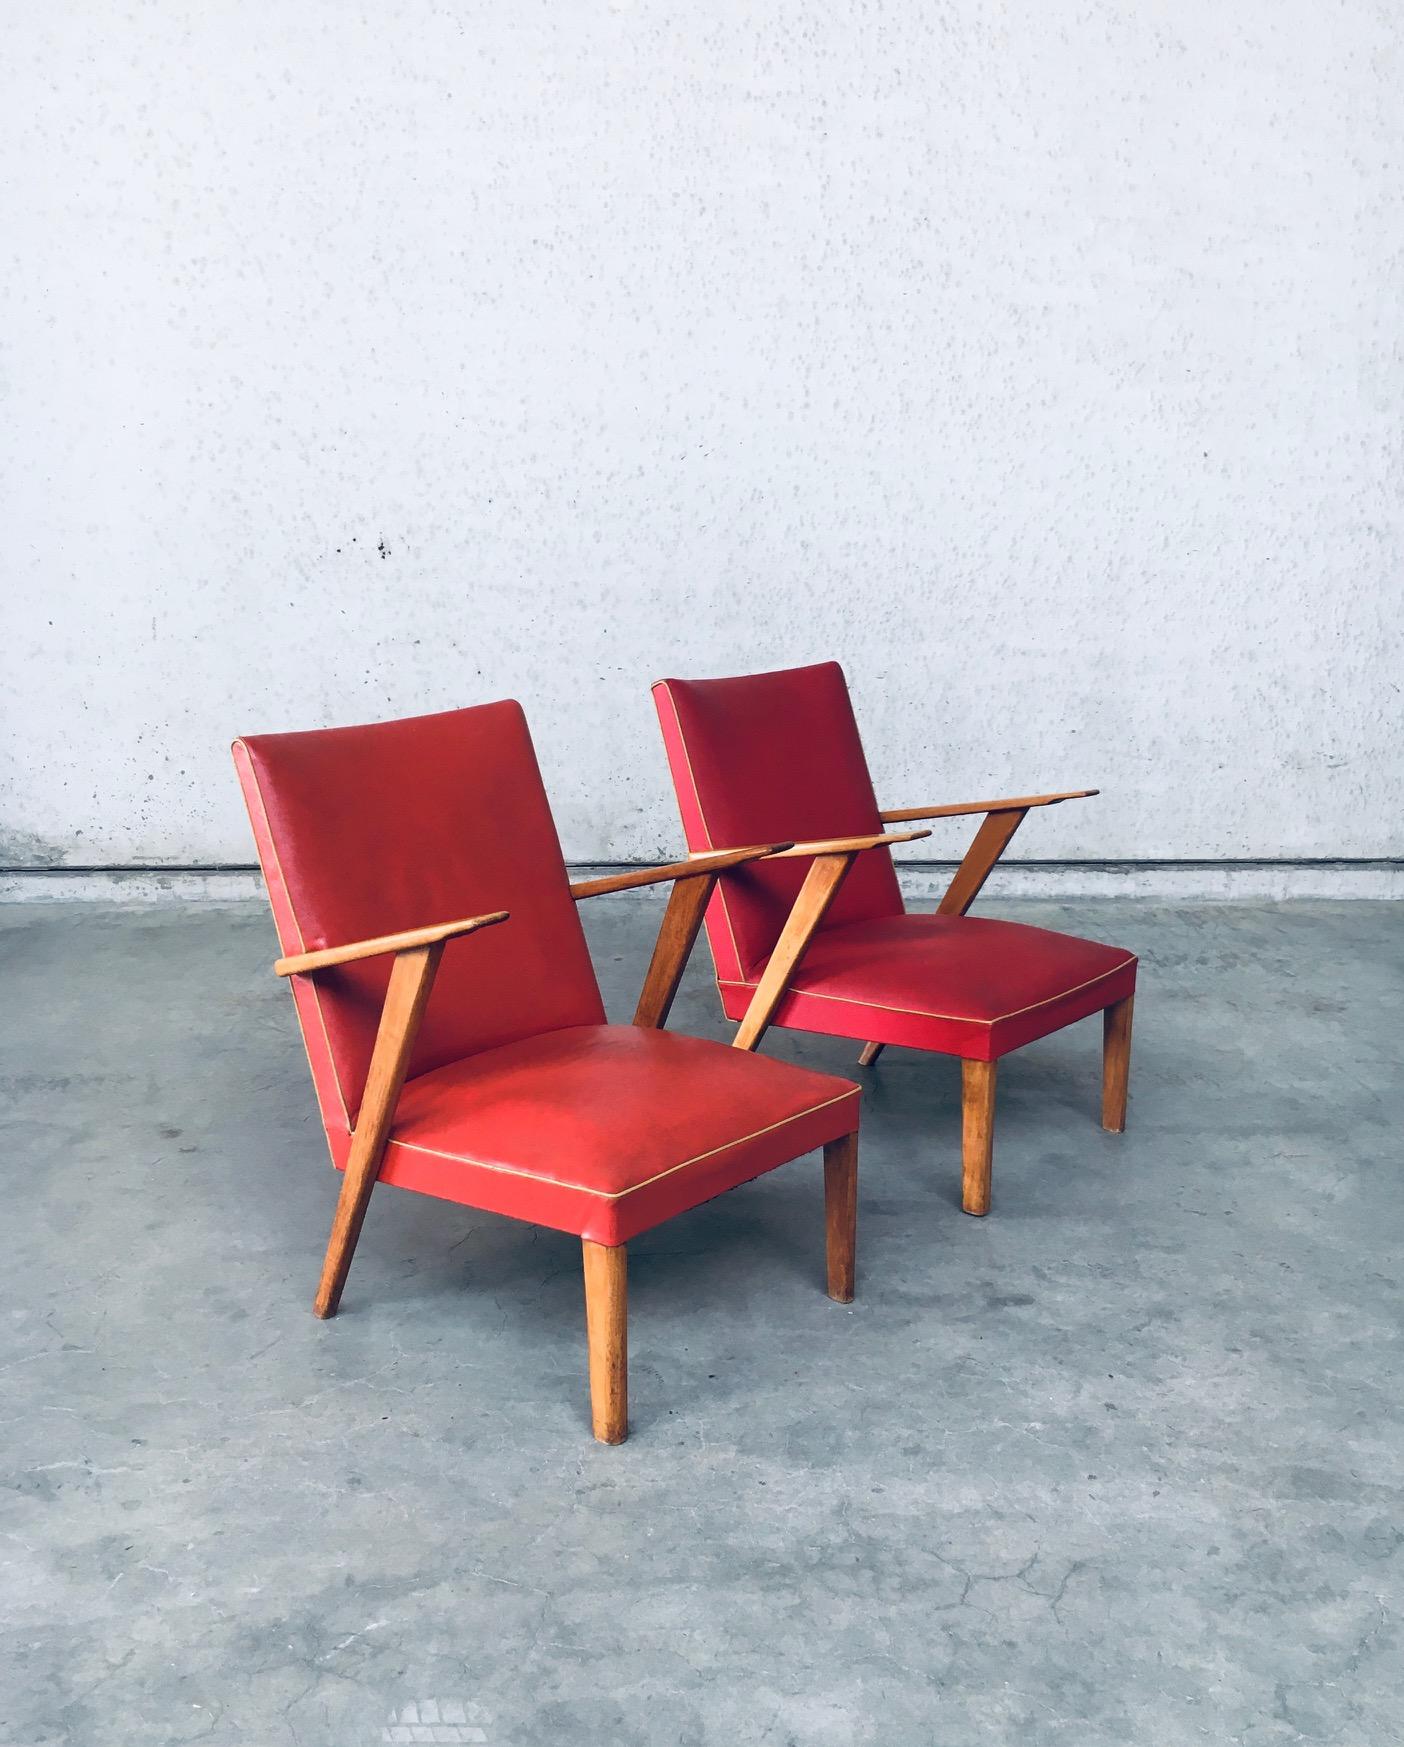 Vintage Midcentury Modern Dutch Design Lounge Chair Set. Hergestellt in den Niederlanden, 1950er Jahre. Kunstleder, zwei verschiedene Farben rot skai mit Buche Armlehnen und Beine. Die Sessel sind ähnlich, unterscheiden sich aber leicht. Der rote